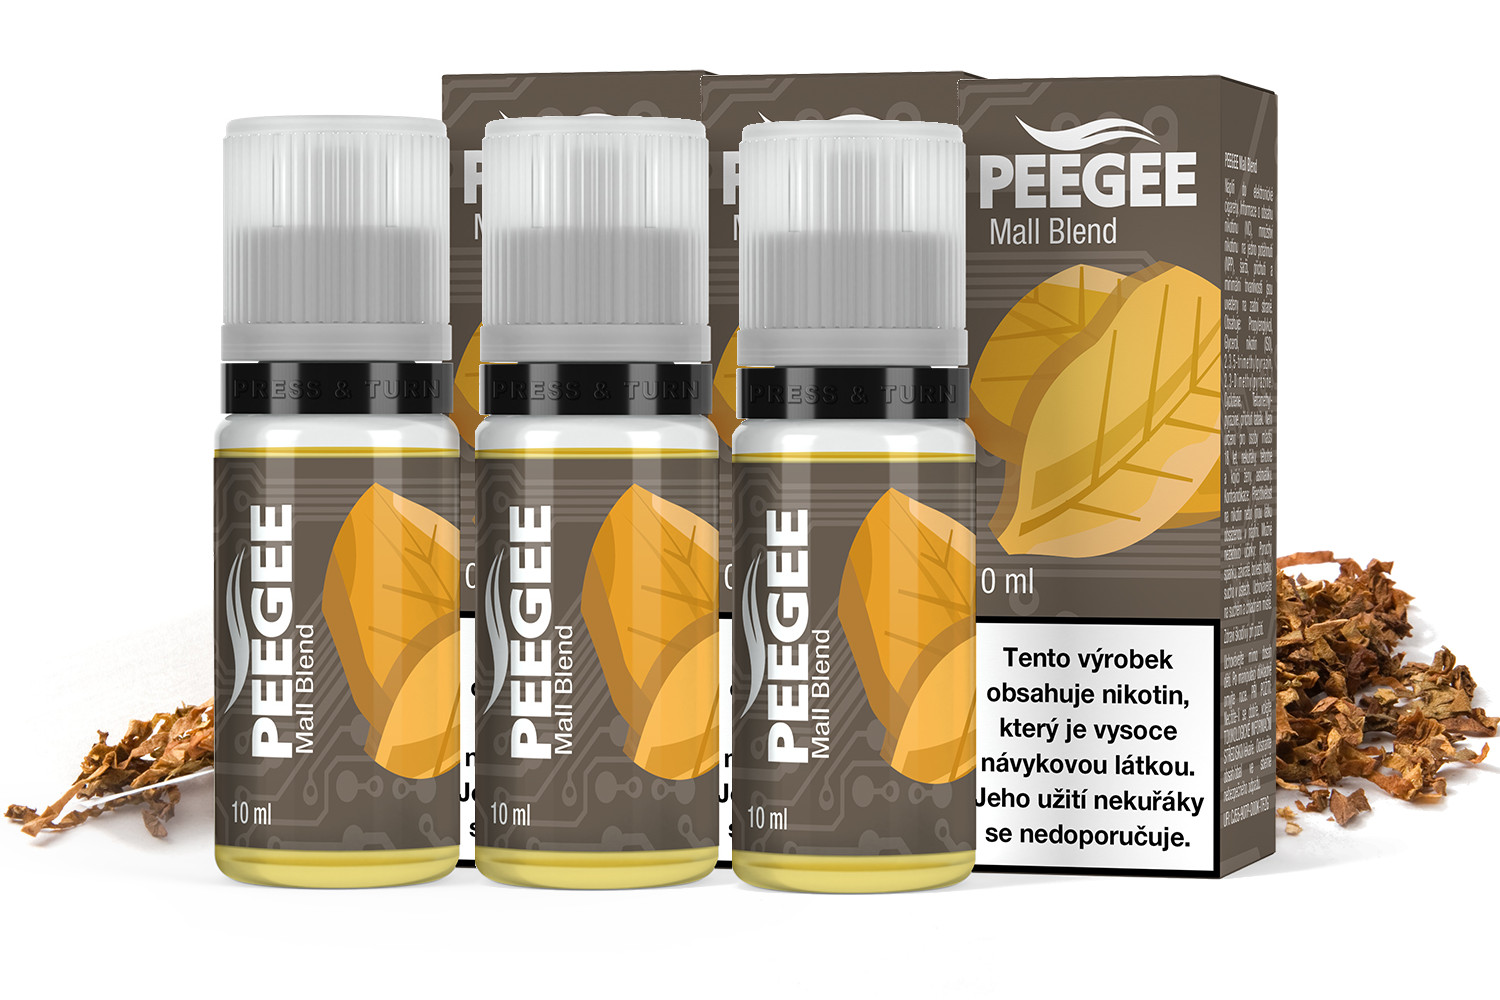 PEEGEE - Mall Blend 3x10ml Obsah nikotinu: 6mg